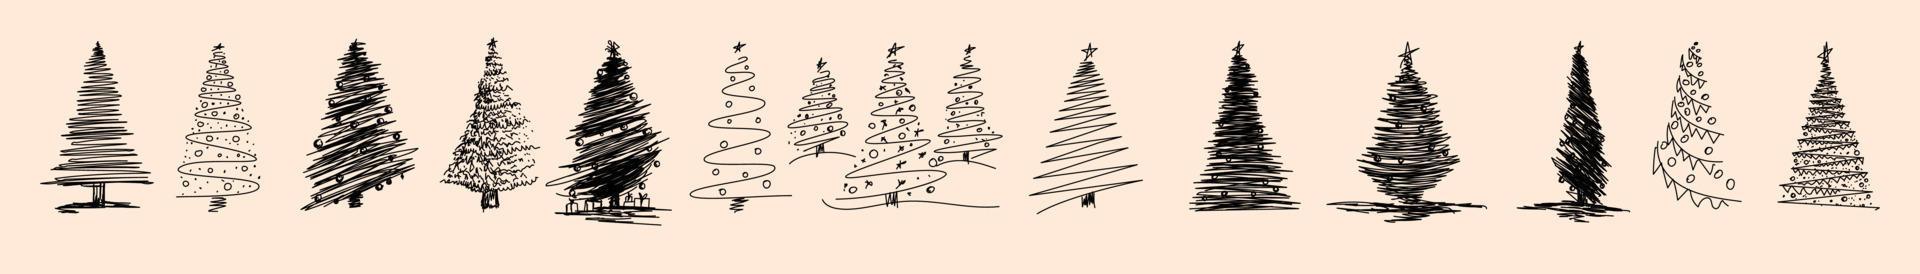 conjunto de árbol de navidad dibujado a mano. elementos aislados de decoración navideña. ilustración vectorial conjunto dibujado a mano de pino de diferente tipo y estilo. vector